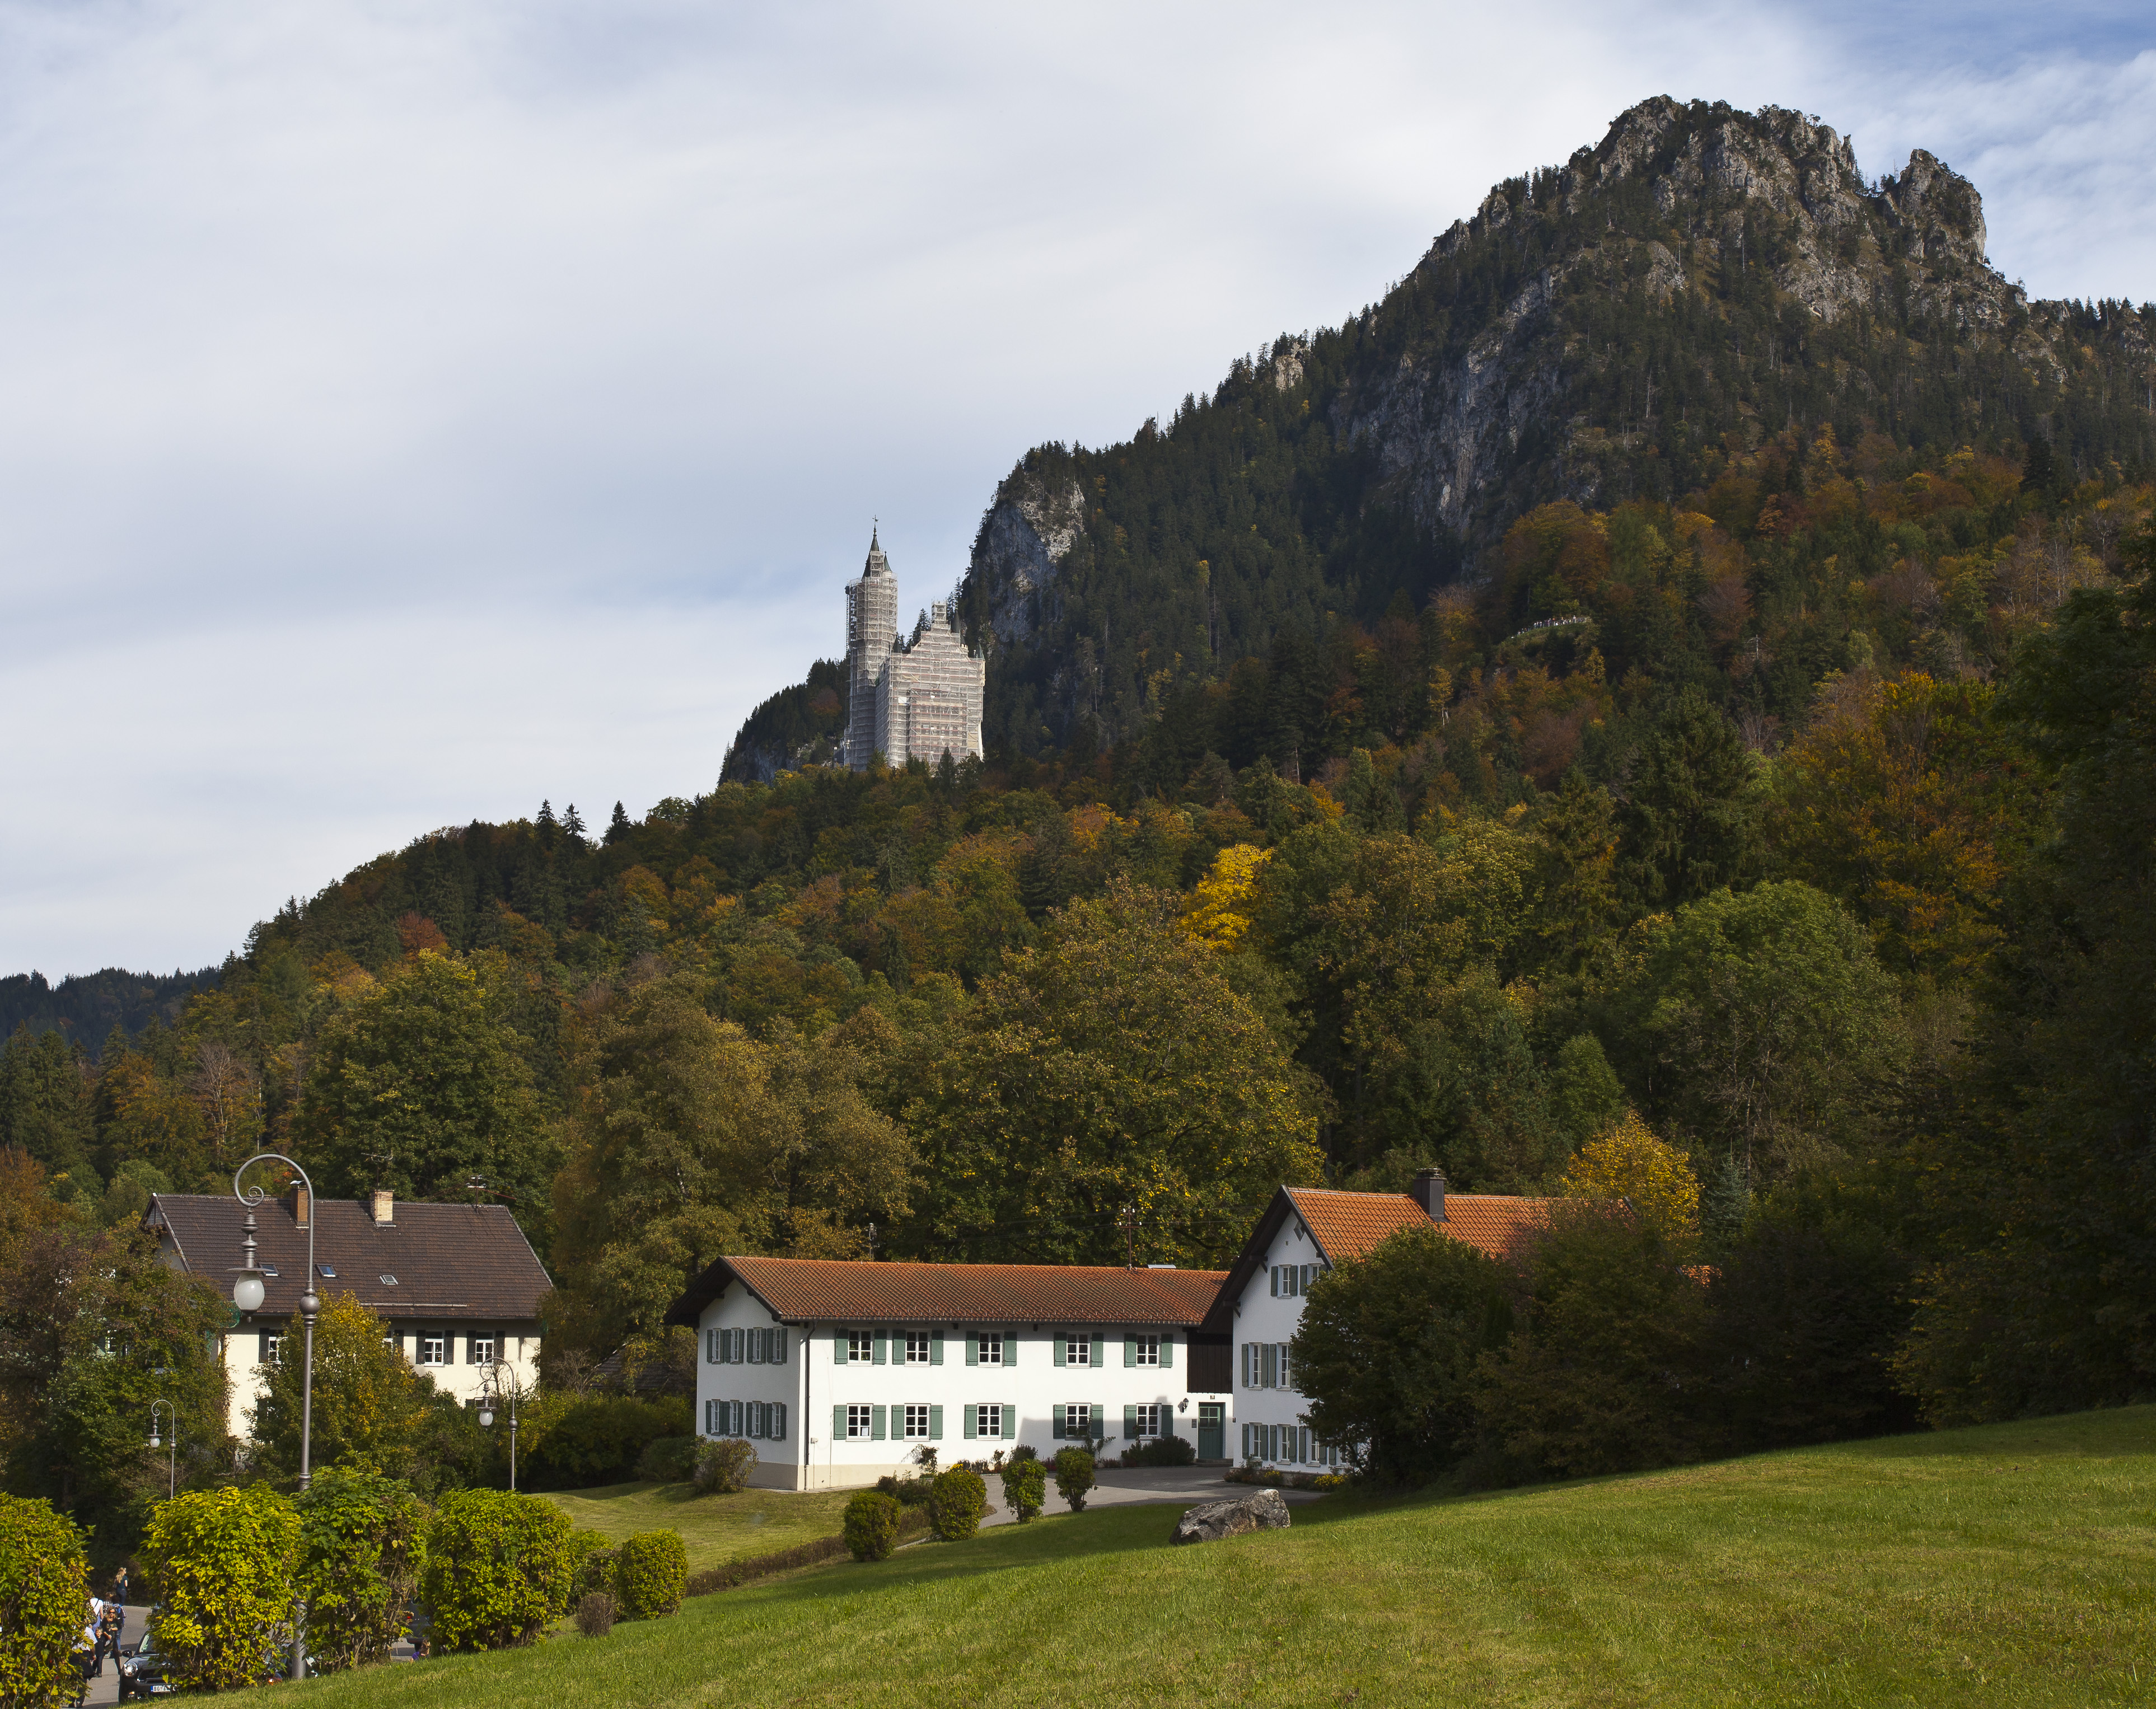 Vistas del castillo de Neuschwanstein, Alemania, 2012-10-06, DD 01